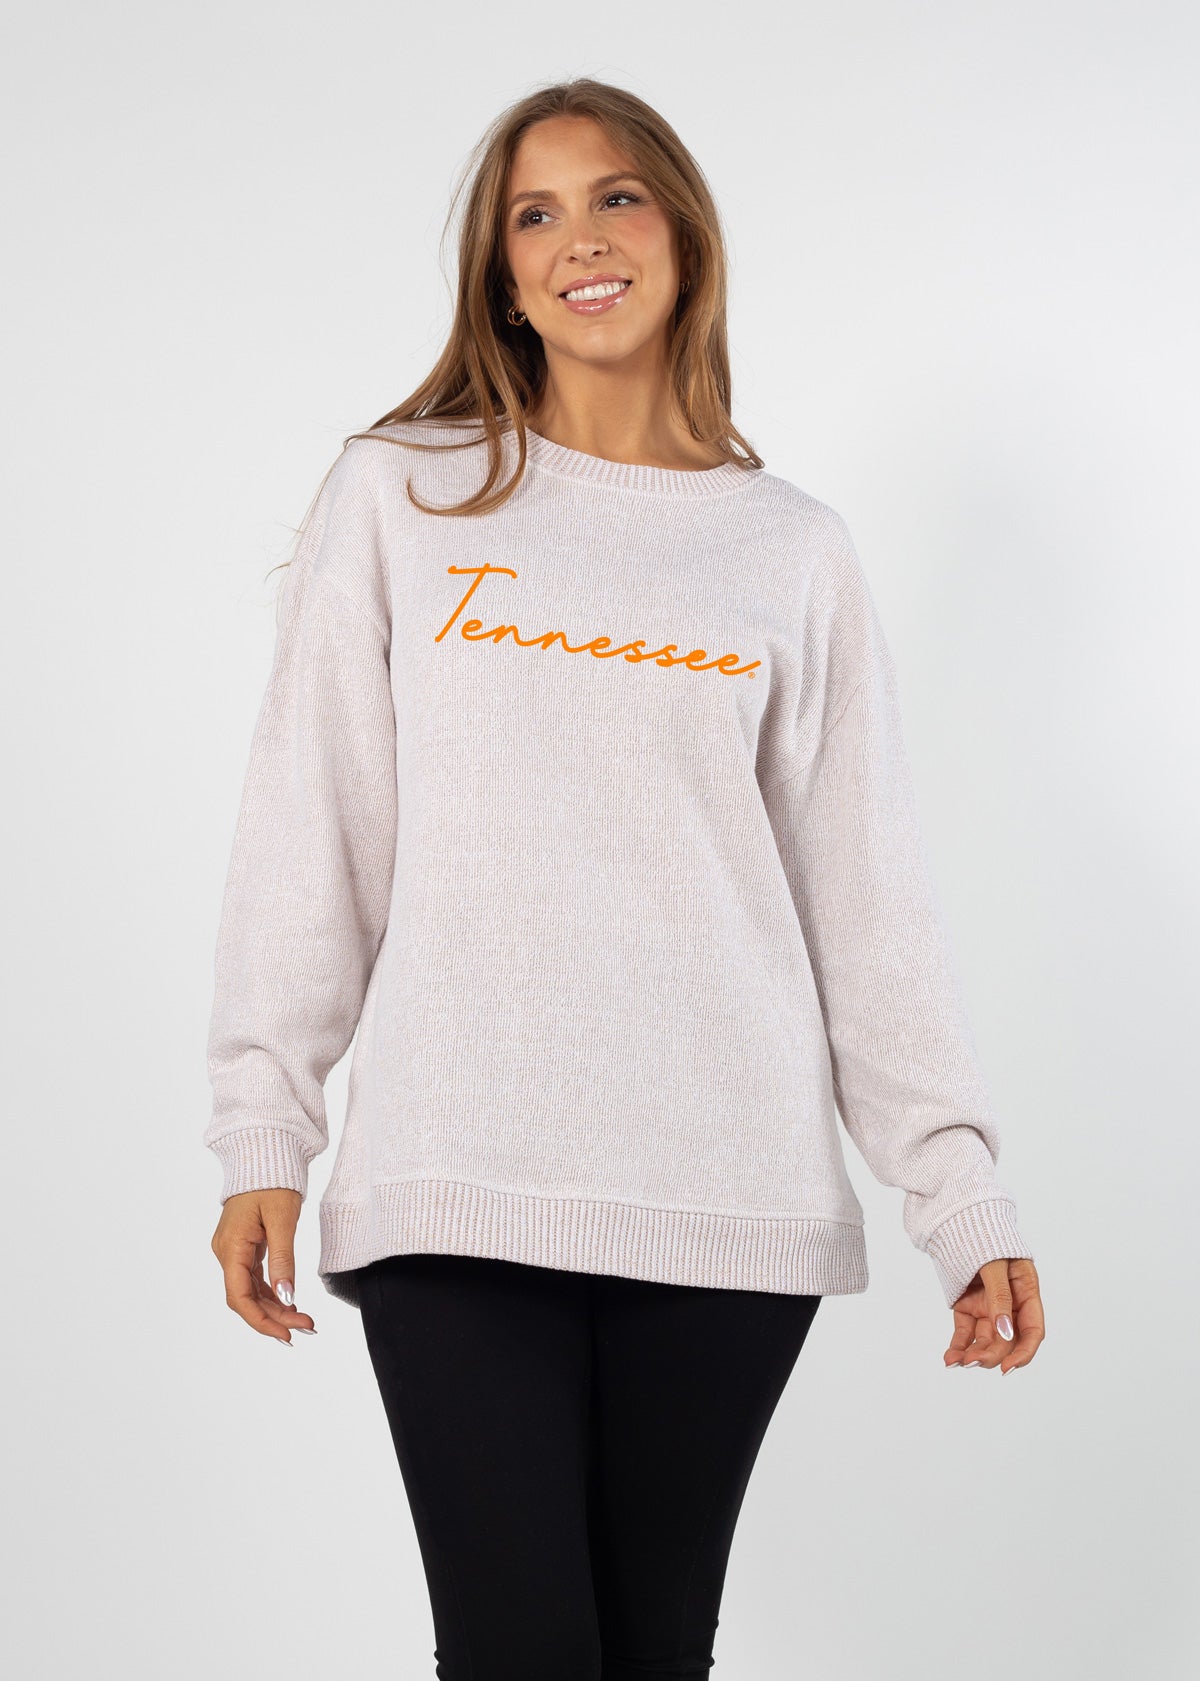 Tennessee Volunteers sweatshirt plus size